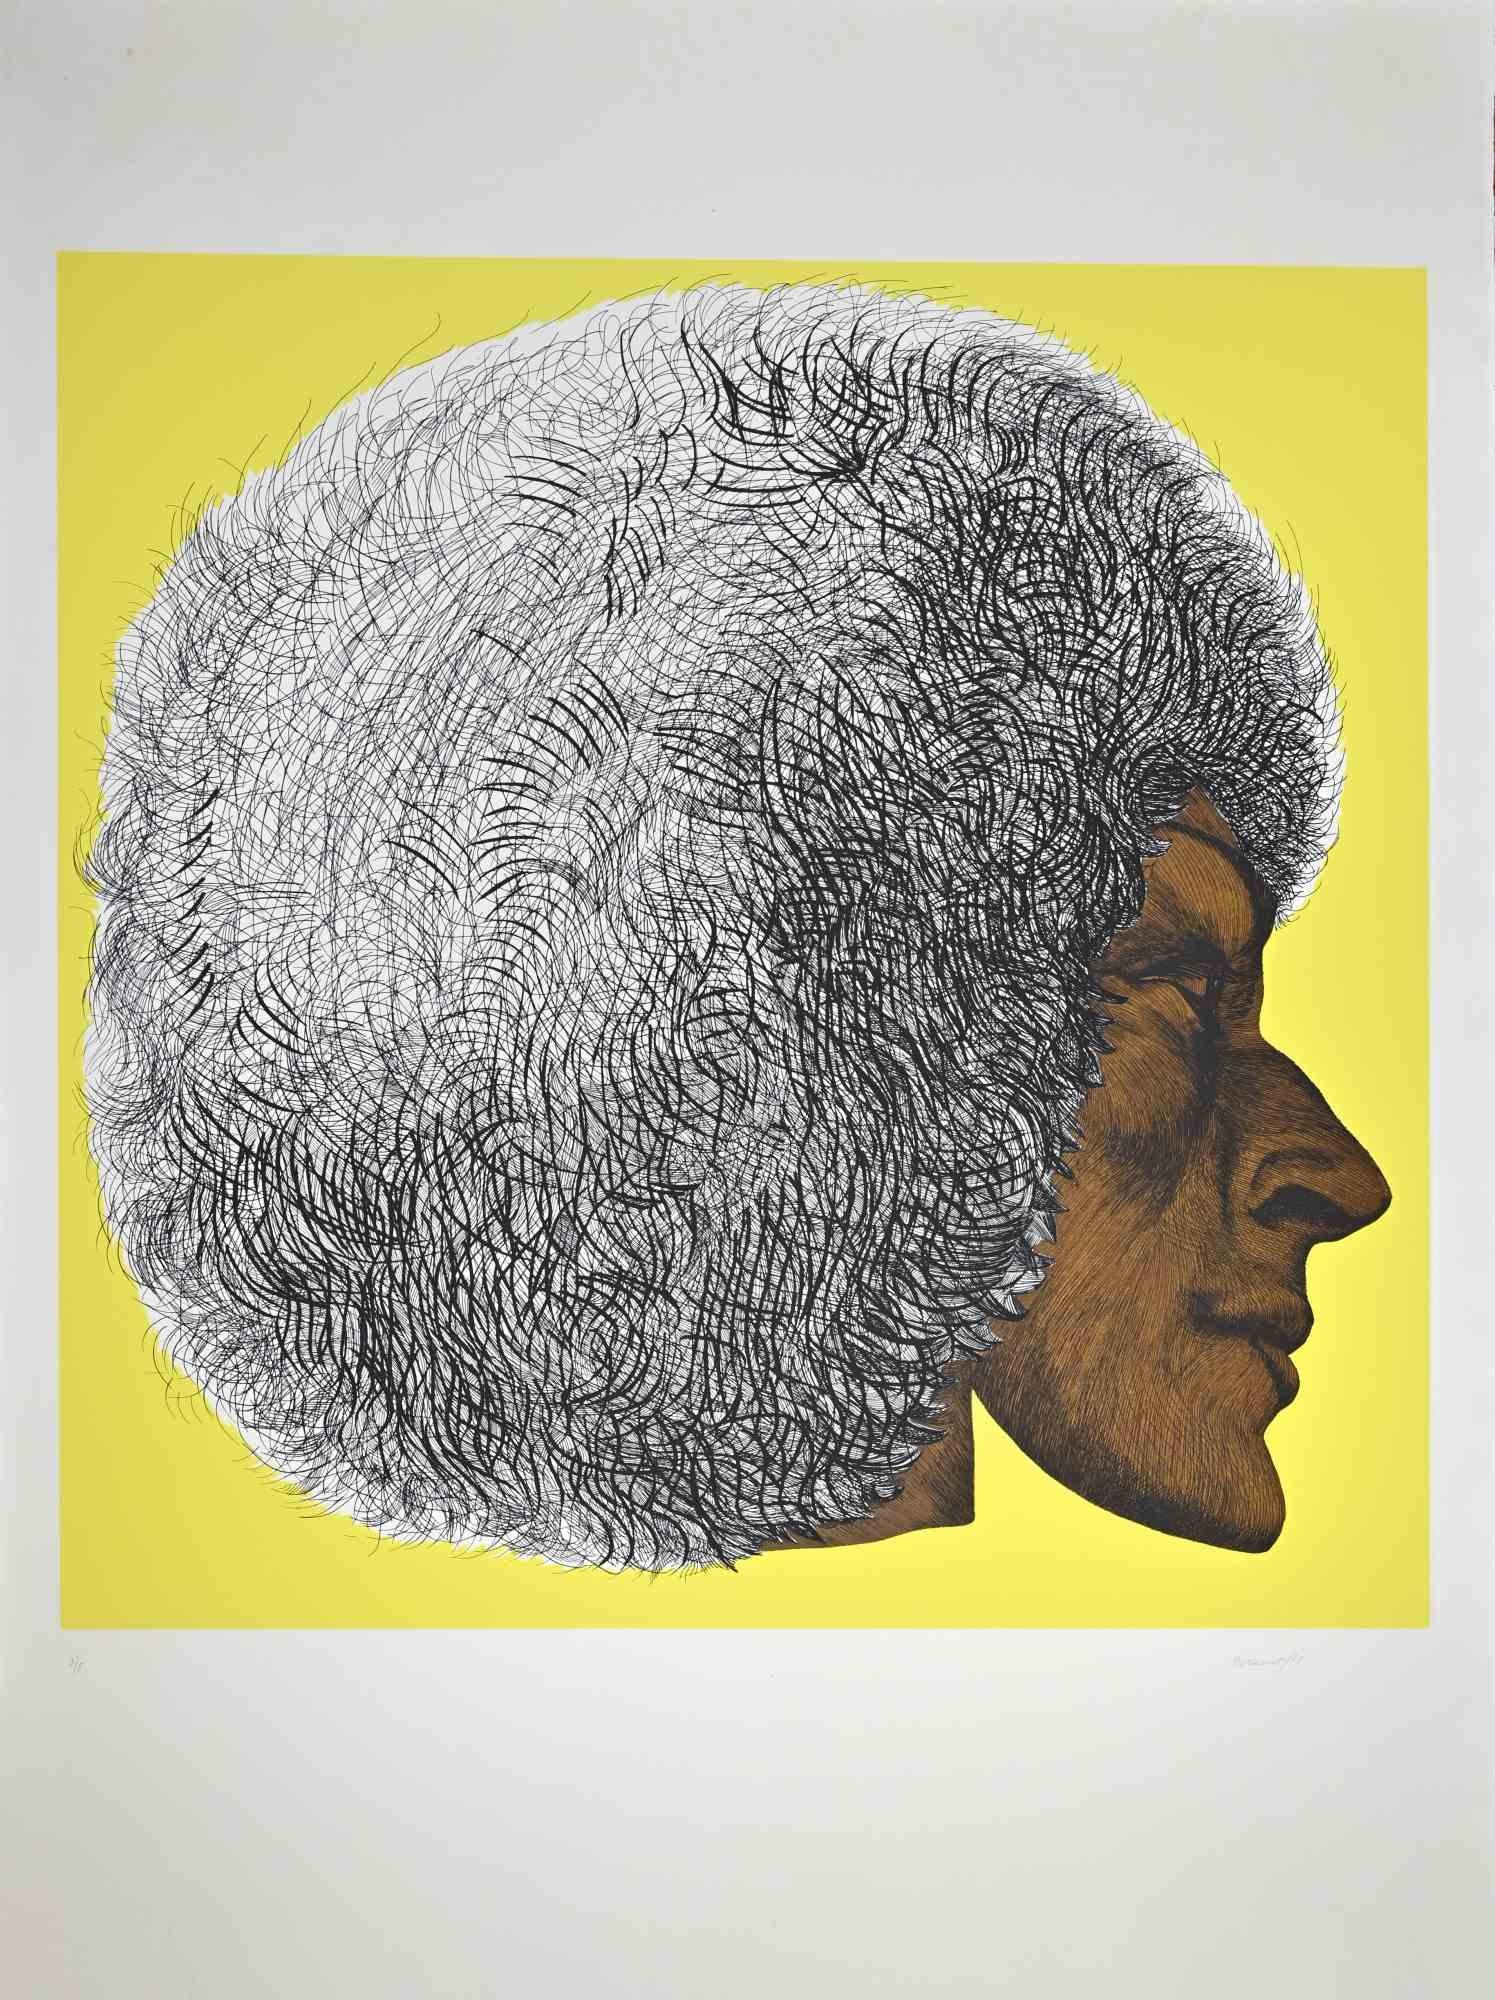 Profile Yellow II - Profilo giallo II ist ein zeitgenössisches Kunstwerk von Giacomo Porzano aus dem Jahr 1972.

Vom Künstler mit Bleistift handsigniert und datiert.

Am unteren Rand nummeriert. Auflage von 3/5